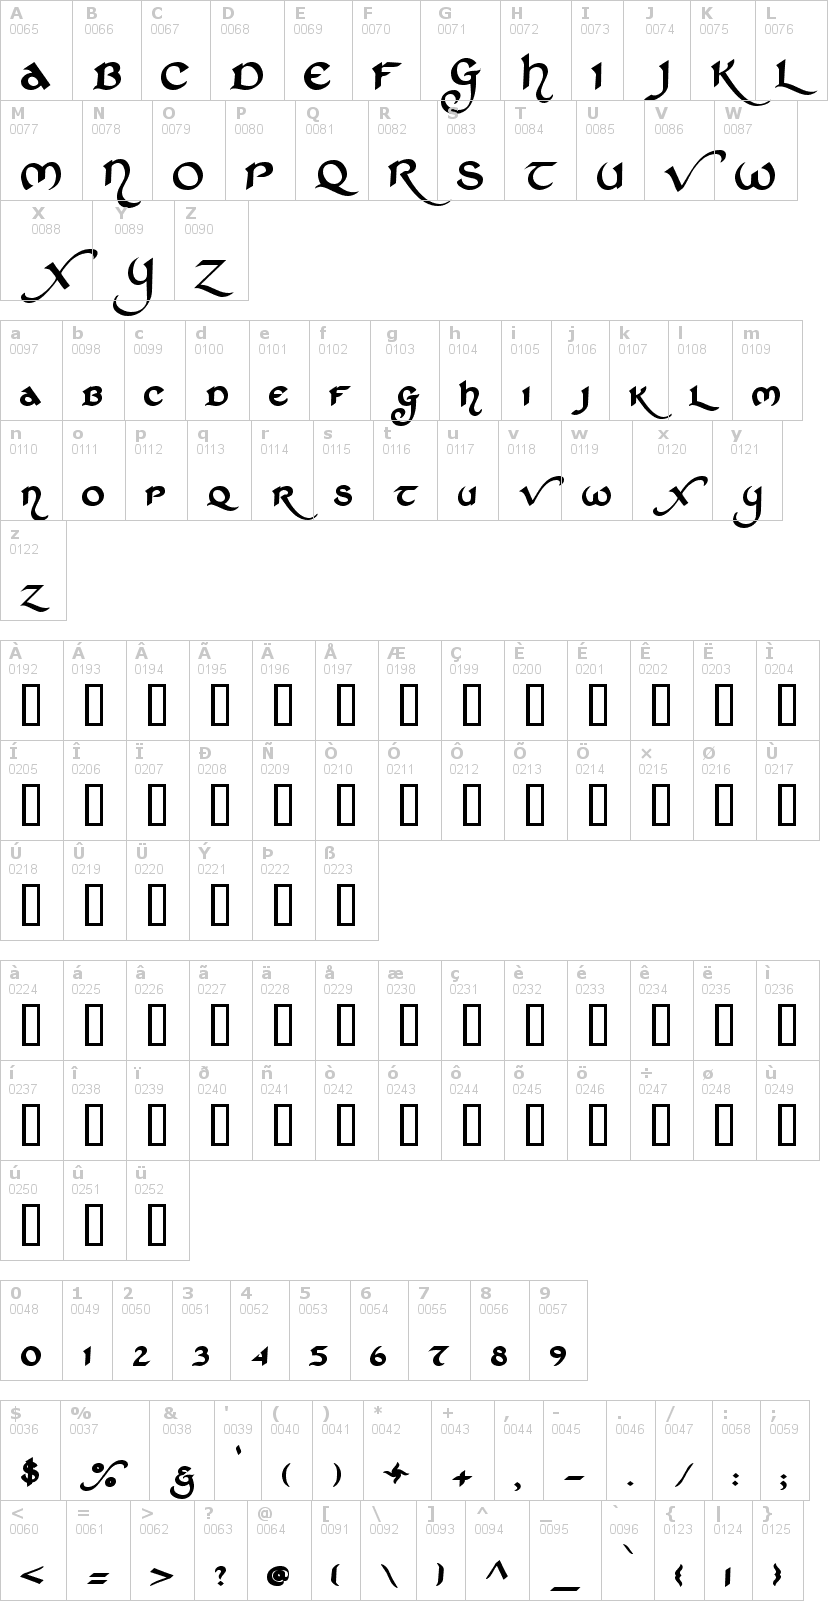 Lettere dell'alfabeto del font st-charles con le quali è possibile realizzare adesivi prespaziati